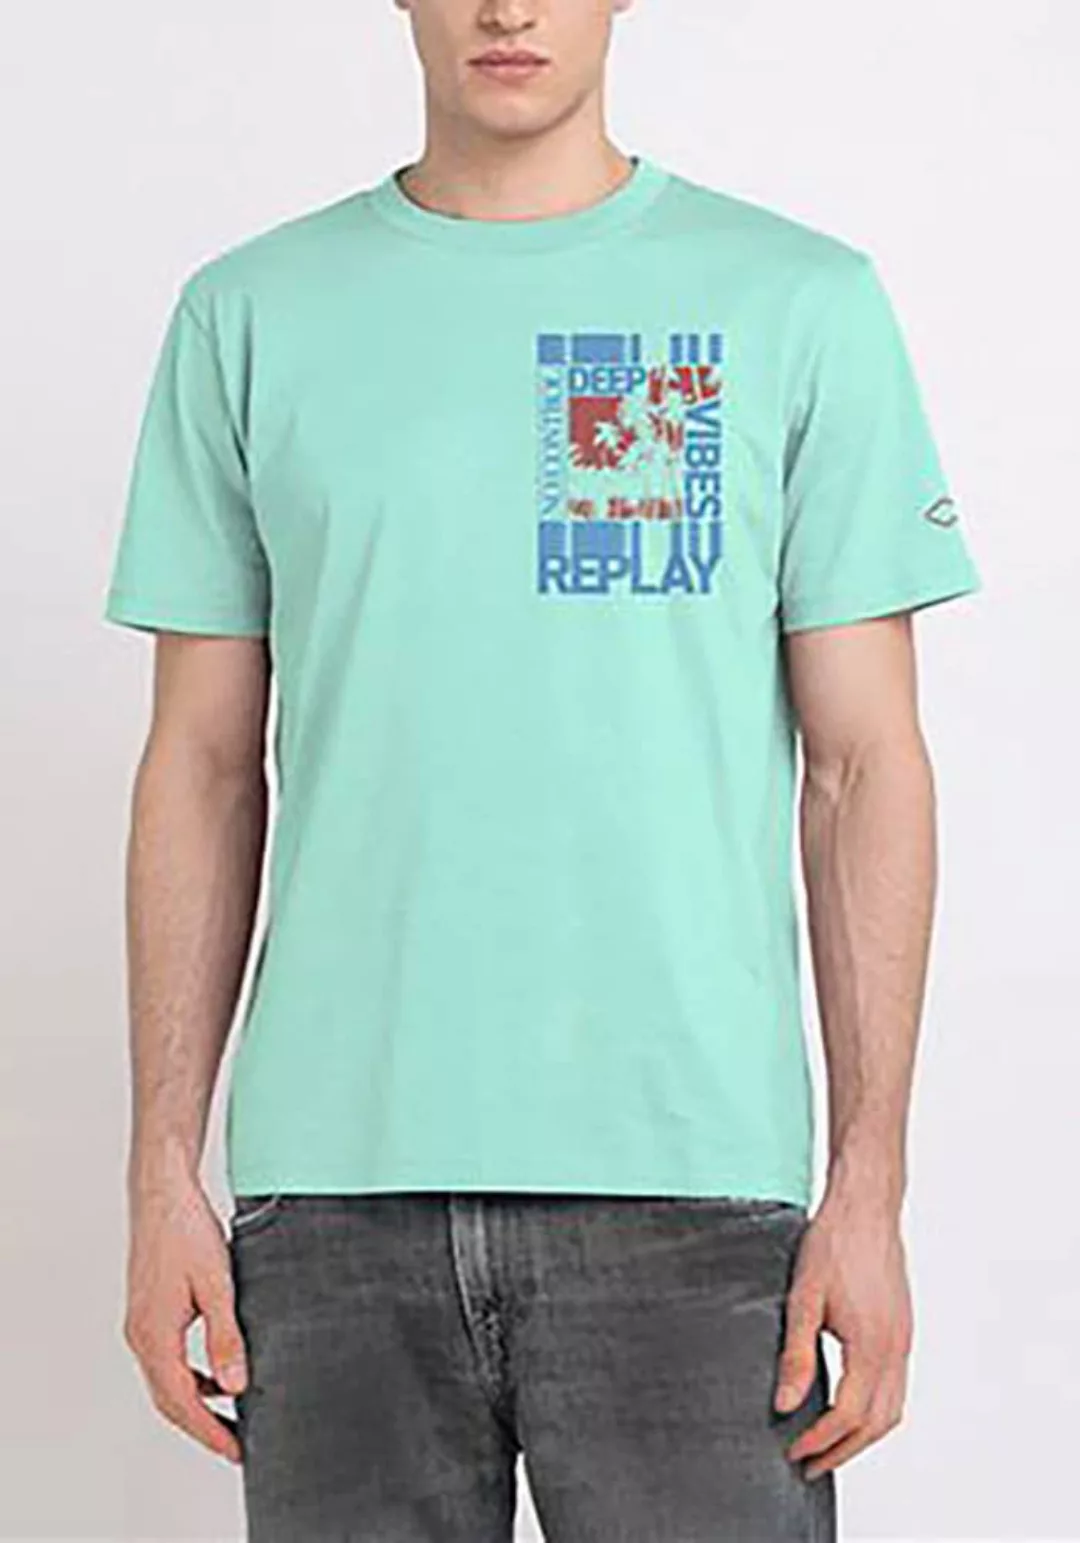 Replay Print-Shirt mit Print auf der Brust günstig online kaufen